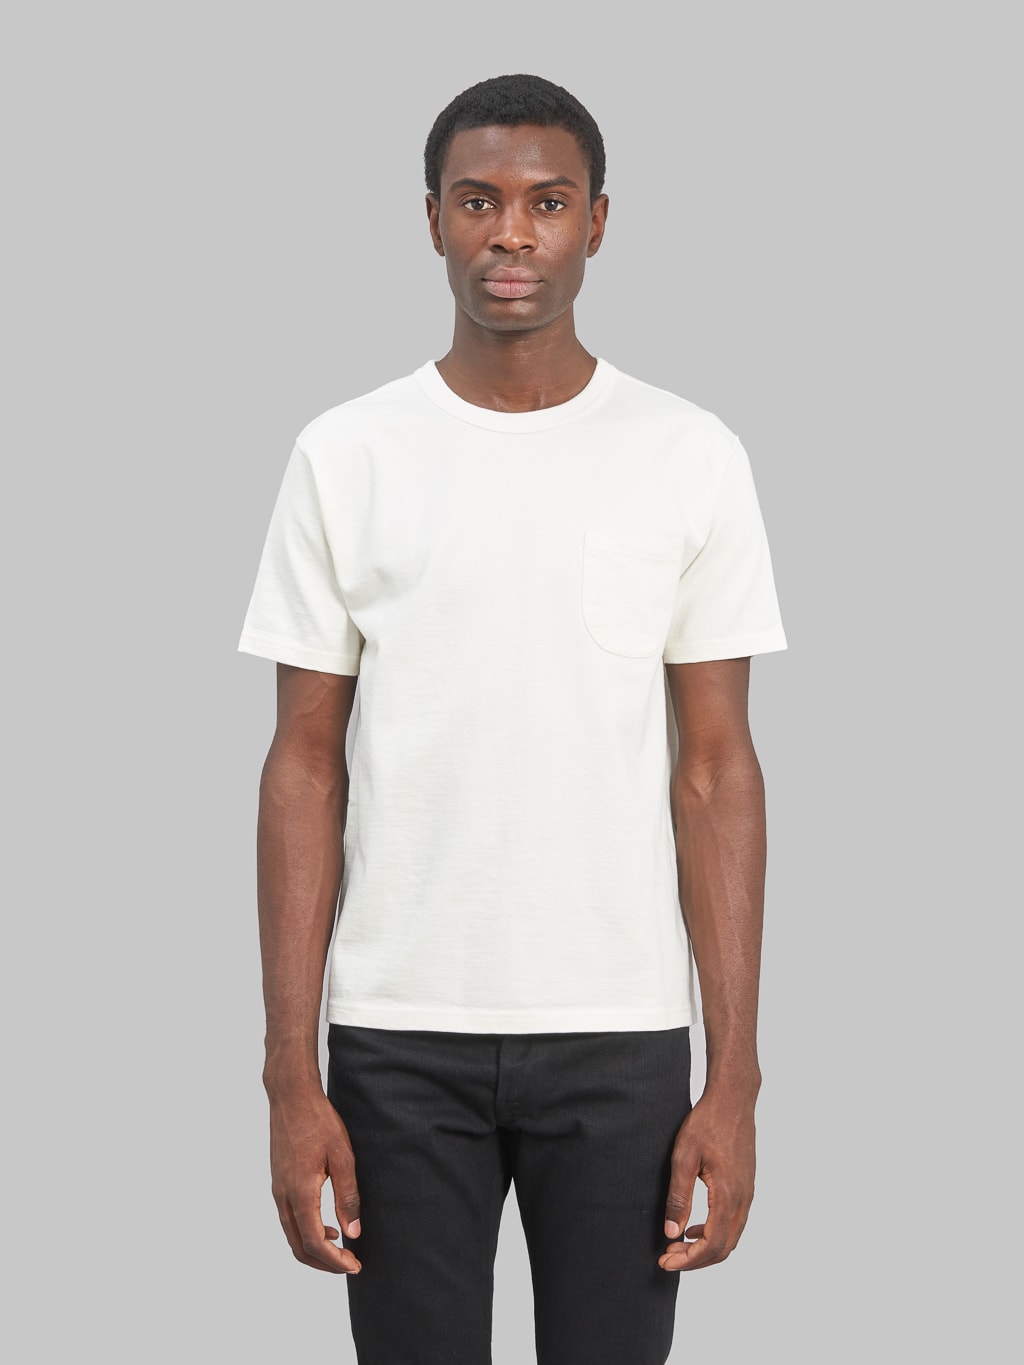 Harvest White T Shirts - UNIFORM SOLUTIONS PLUS